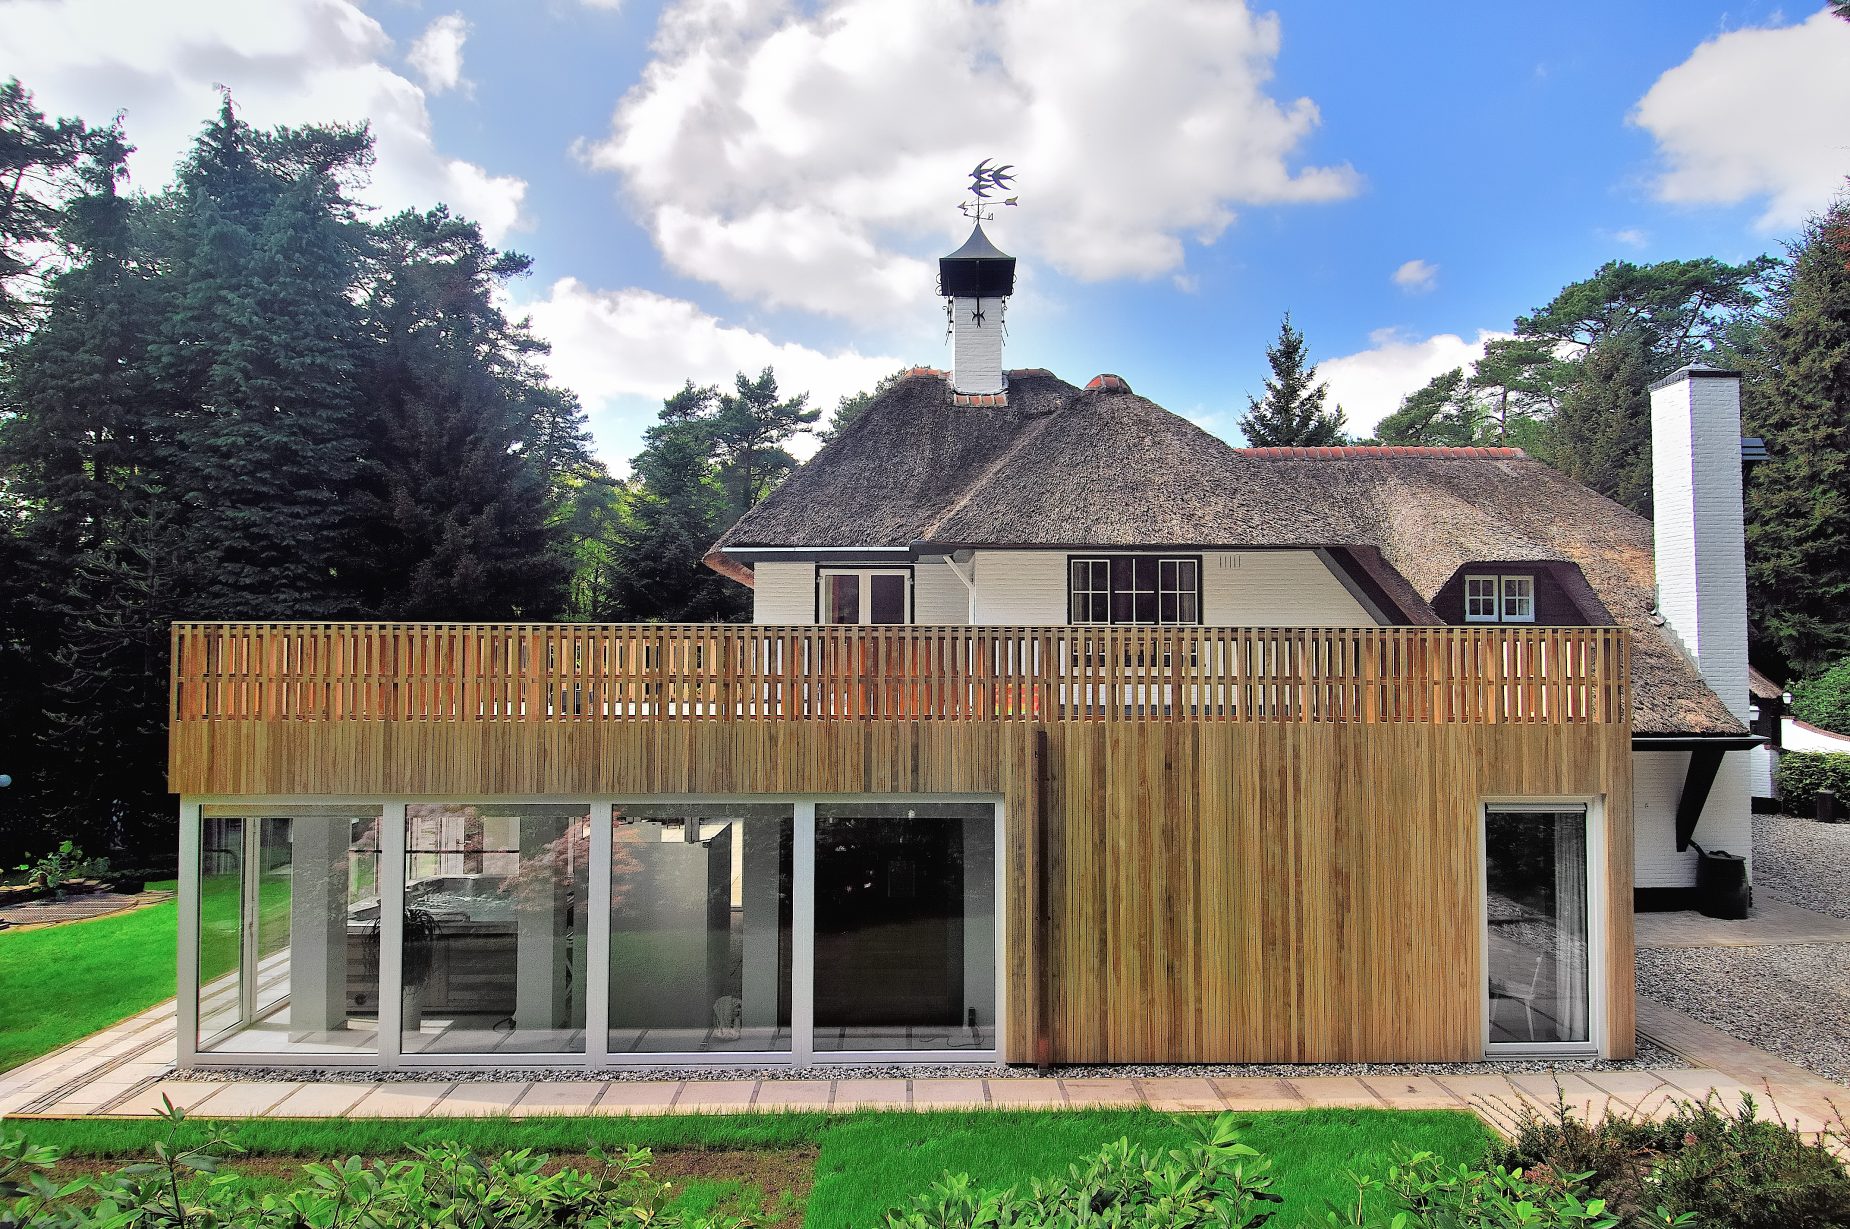 Renovatie met uitbouw vrijstaande villa met rietenkap en houten gevel in Doorn door architect Maxim Winkelaar uit Amsterdam.